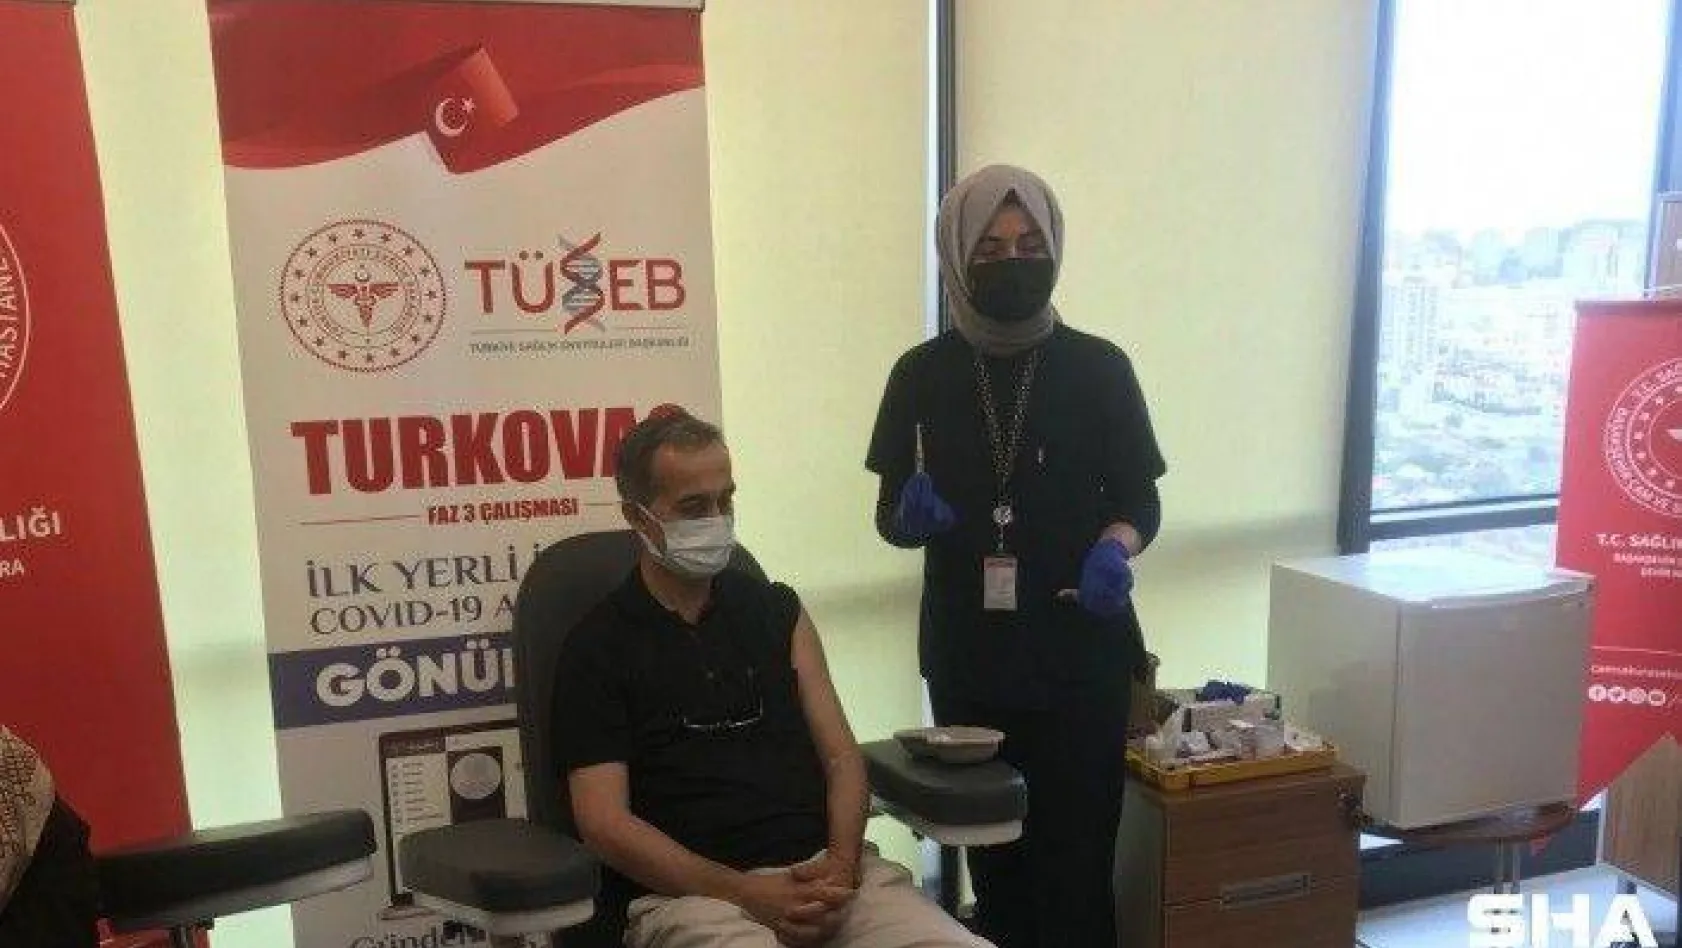 Turkovac'ın Faz-3 çalışmaları kapsamında İstanbul'da gönüllüler aşılanıyor